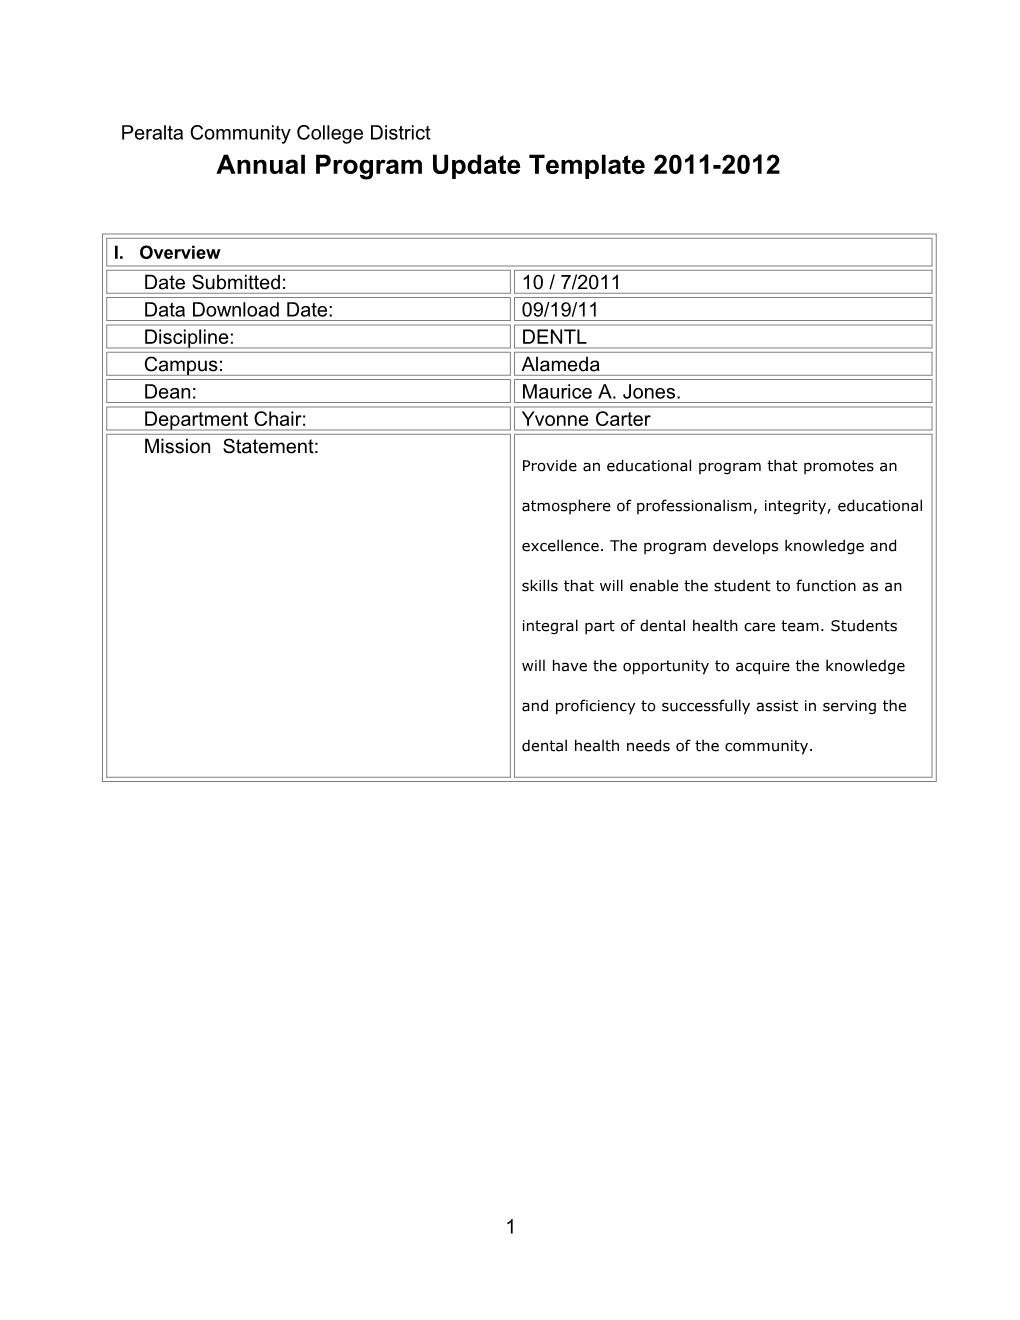 Annual Program Update Template 2011-2012